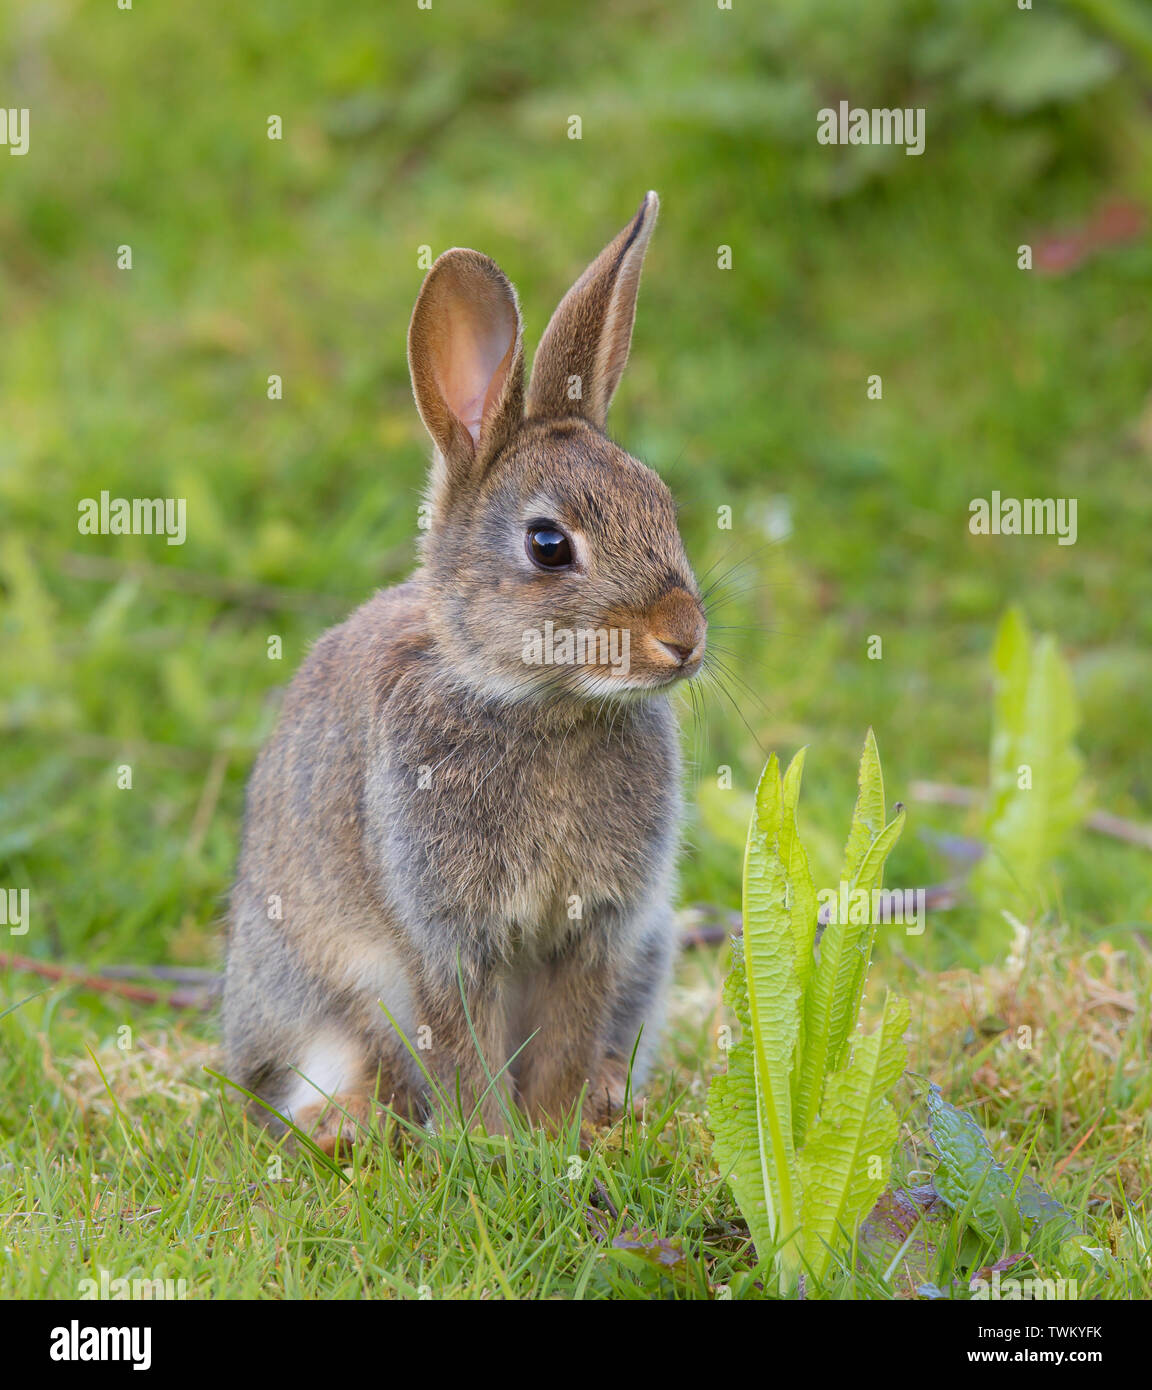 Vue rapprochée avant du lapin sauvage du Royaume-Uni (Oryctolagus cuniculus) isolé, assis en position verticale sur l'herbe à l'extérieur dans le champ. Mignon petit animal, oreilles de lapin. Banque D'Images